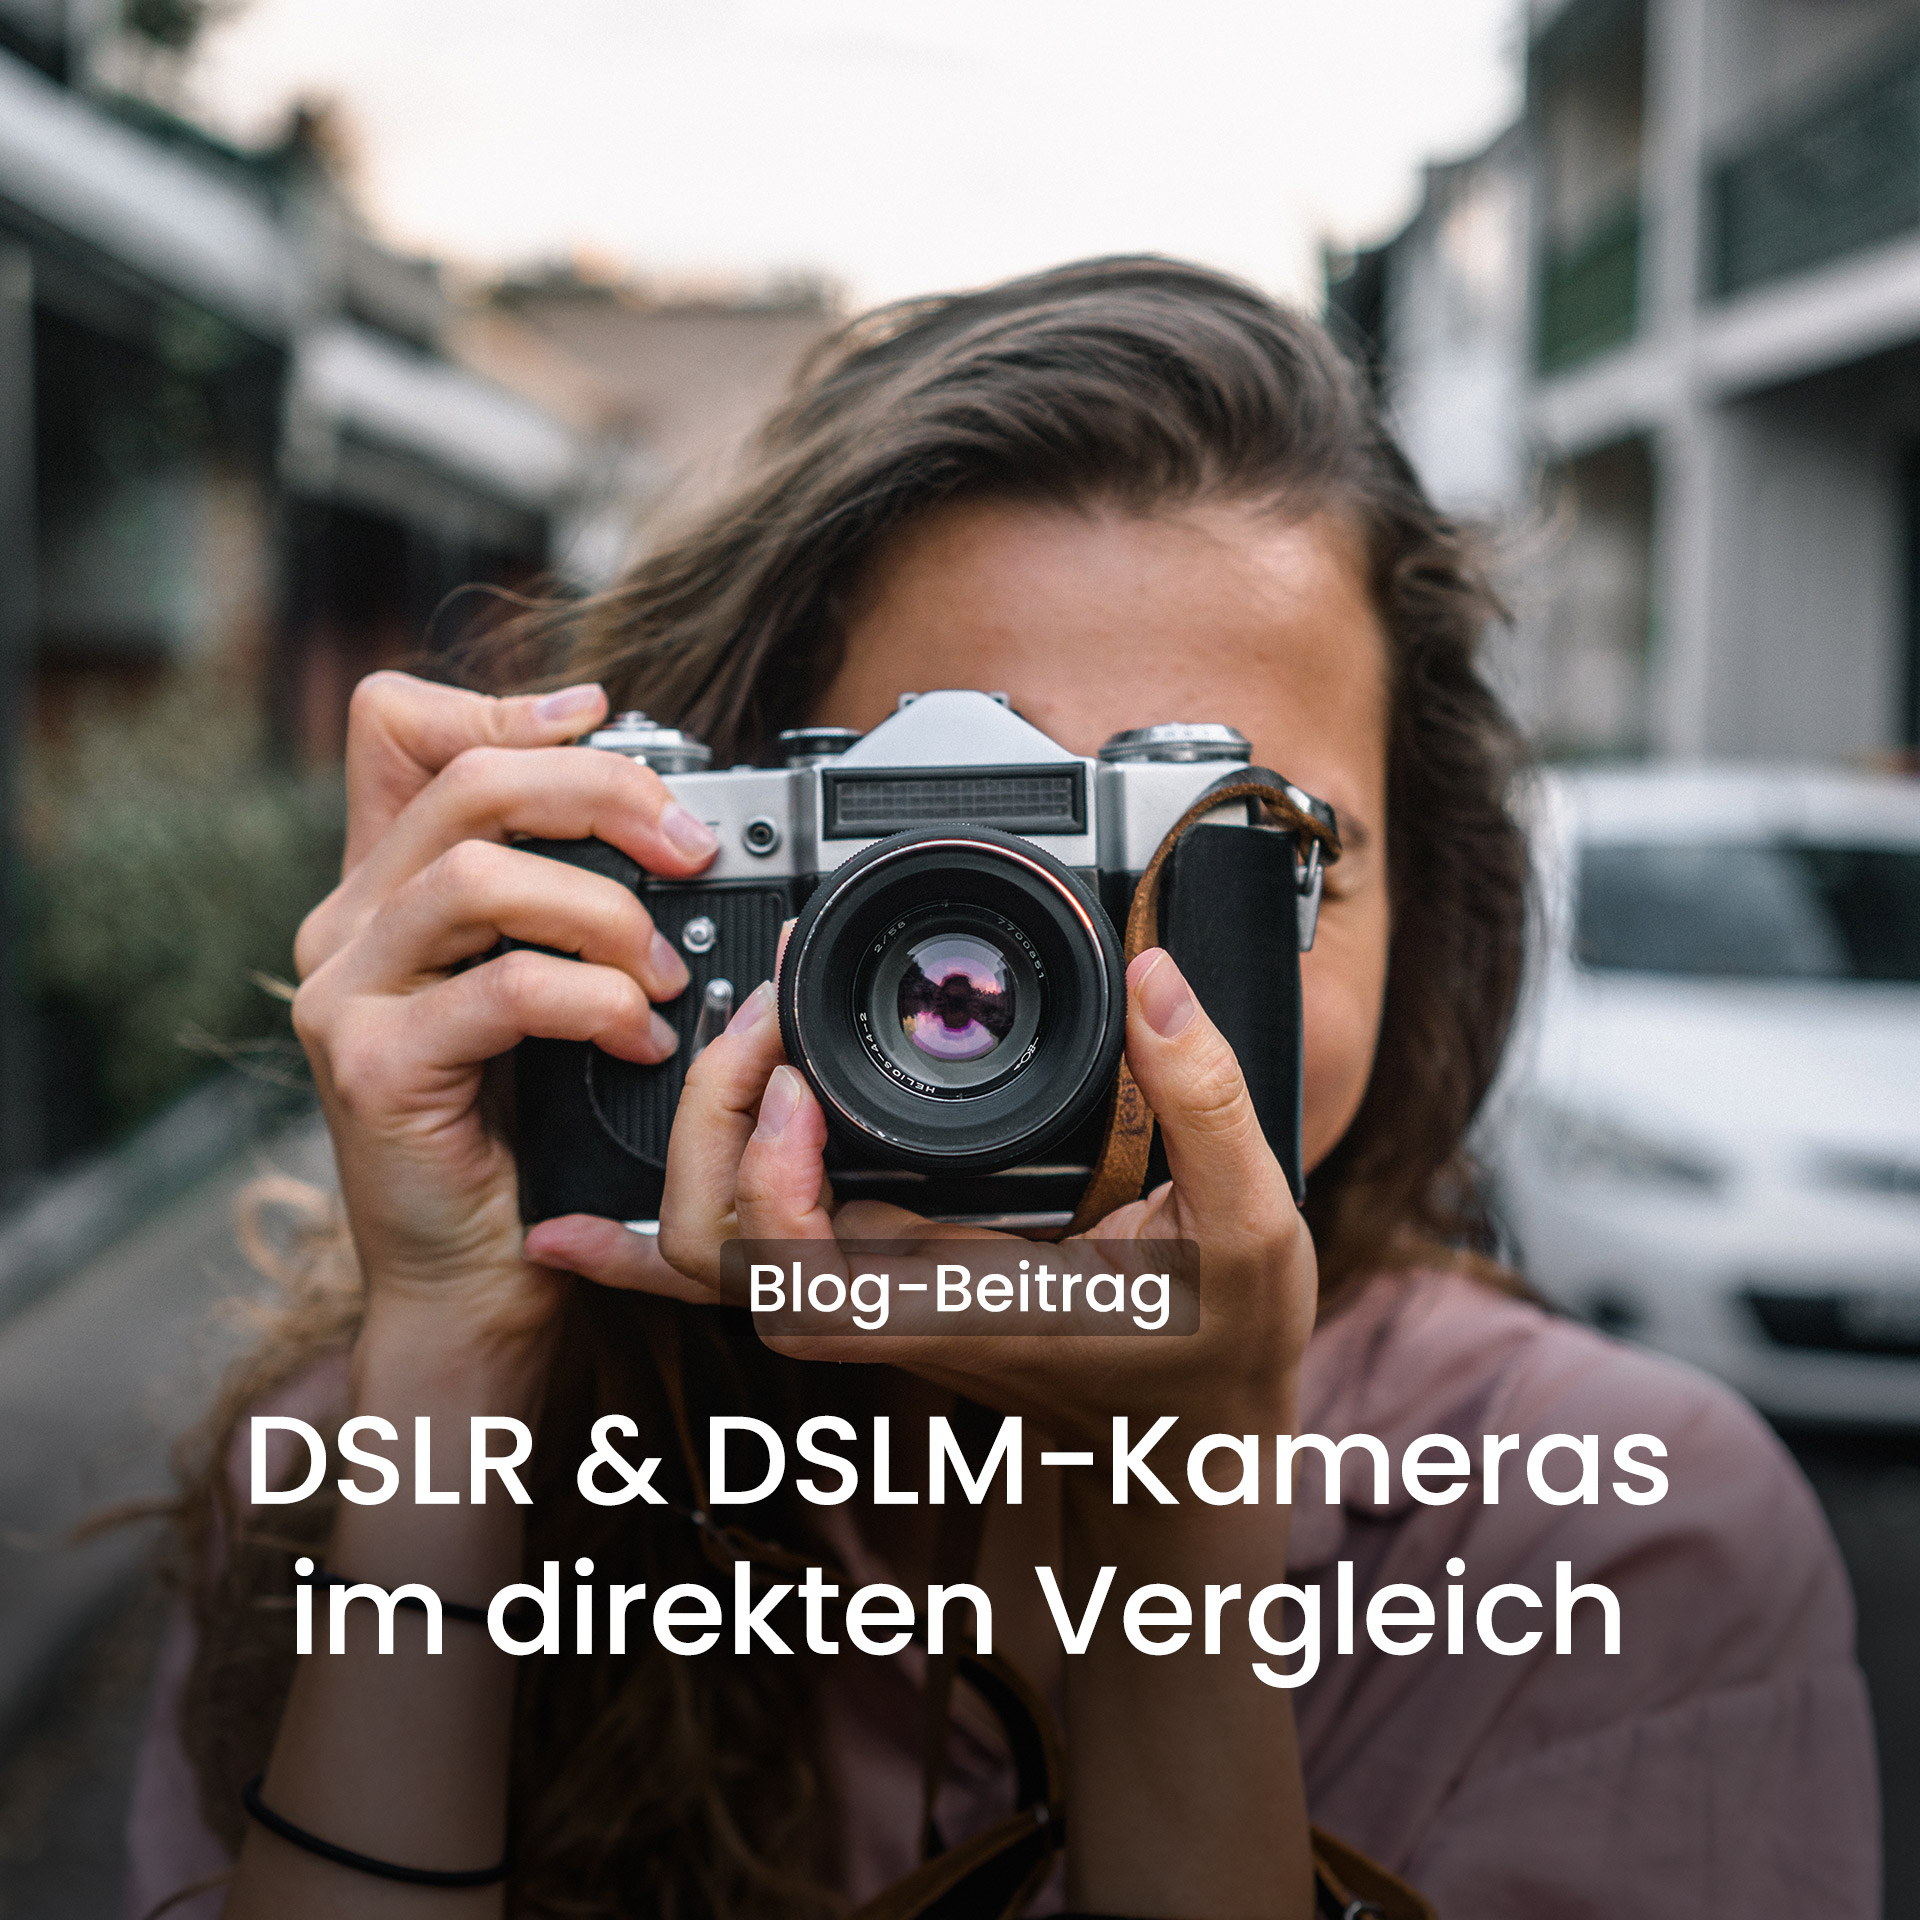 DSLR & DSLM-Kameras im direkten Vergleich - Spiegel oder spiegellos?